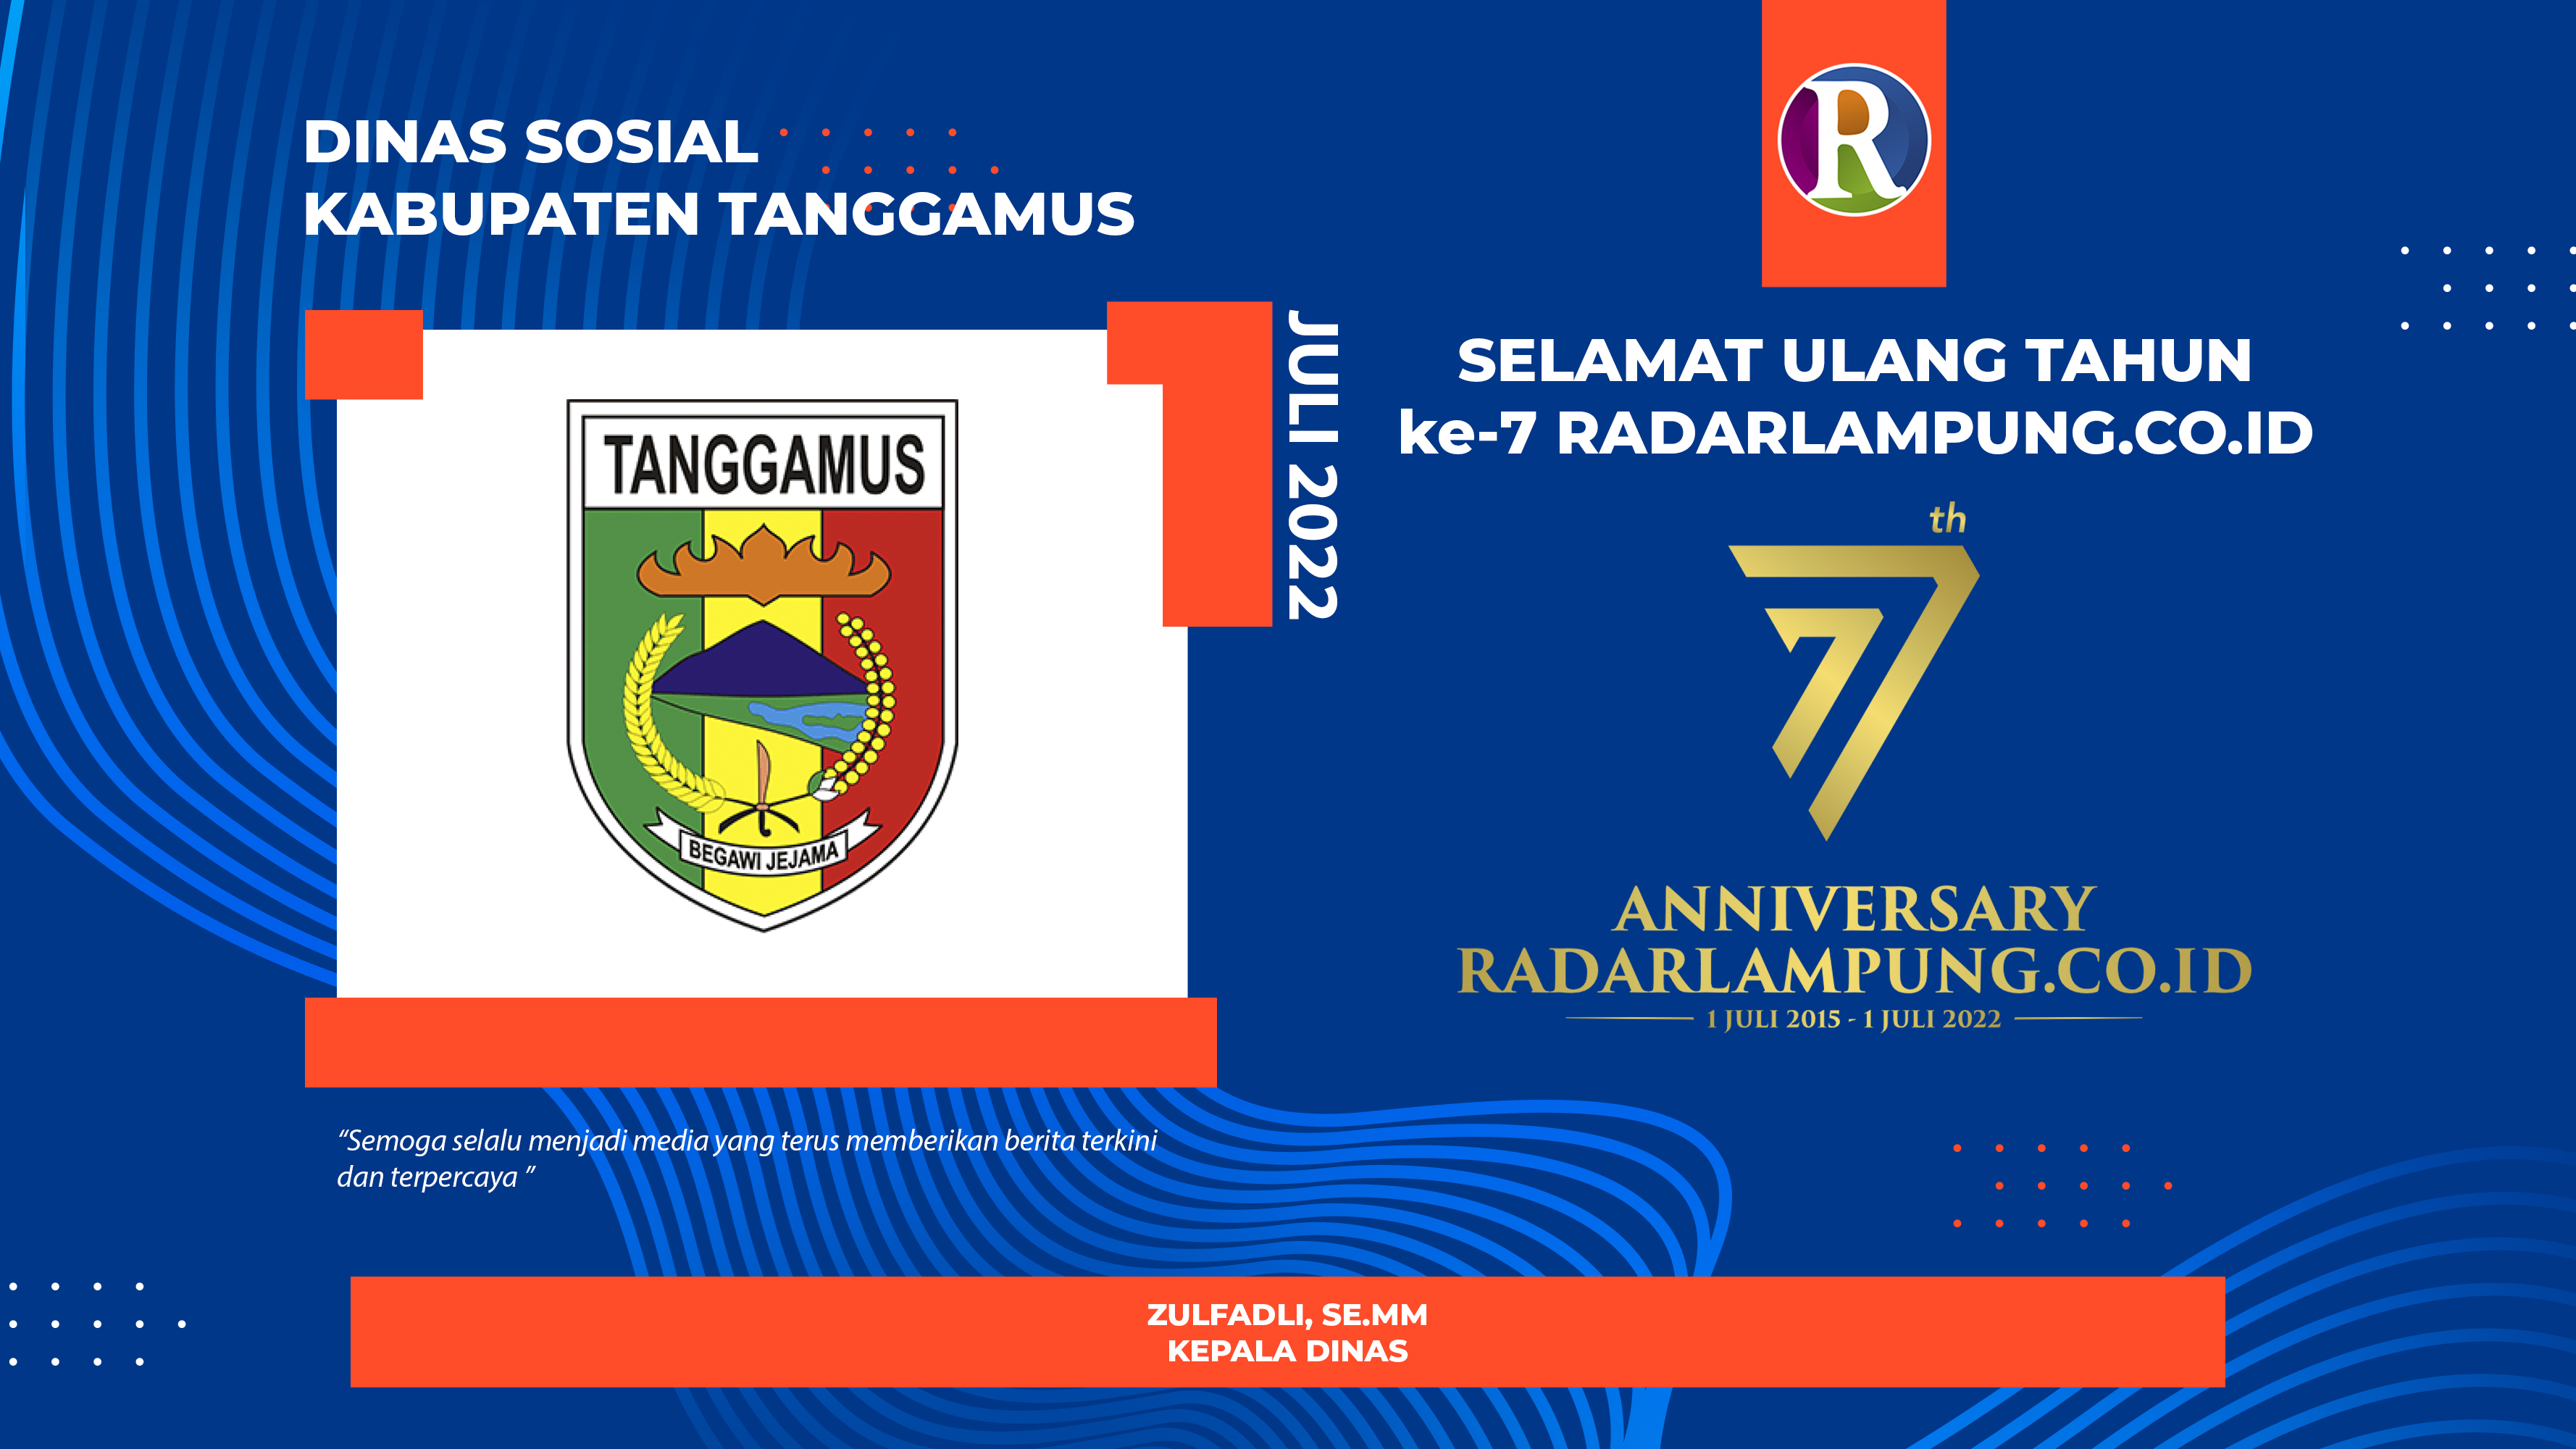 Dinas Sosial Kabupaten Tanggamus Mengucapkan Selamat Ulang Tahun ke-7 Radarlampung.co.id